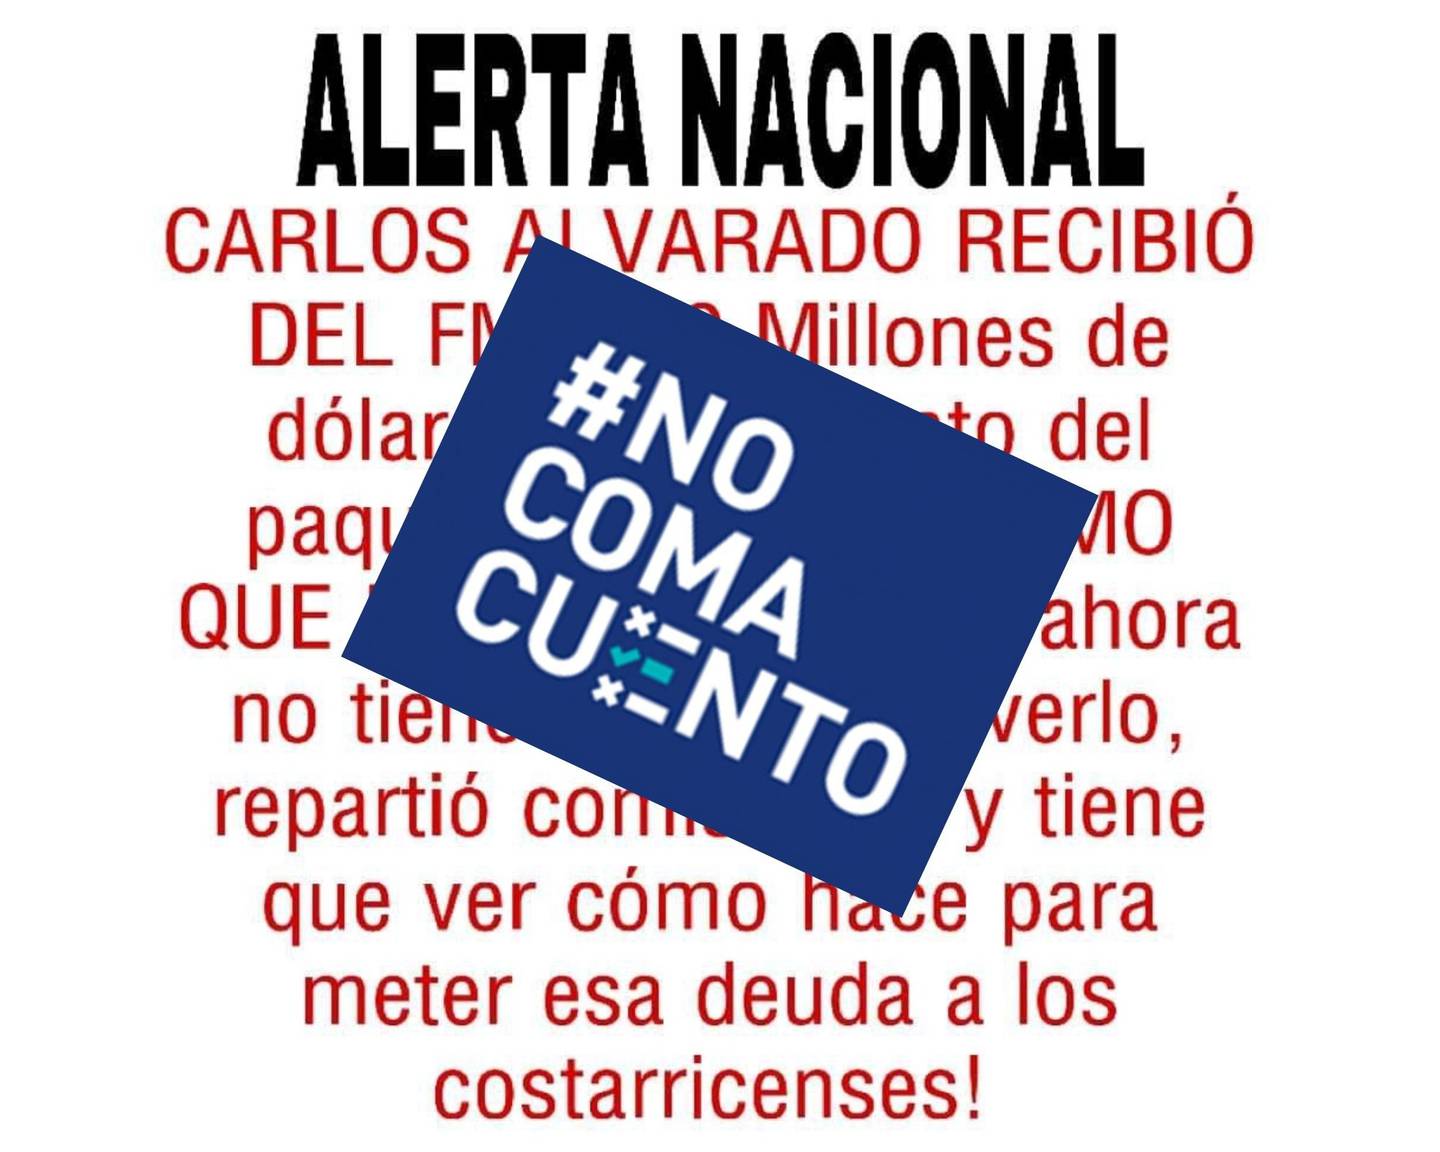 Un falso mensaje en redes sociales afirma que Carlos Alvarado recibió un adelanto de $500 millones del FMI y repartió comisiones con ese dinero.